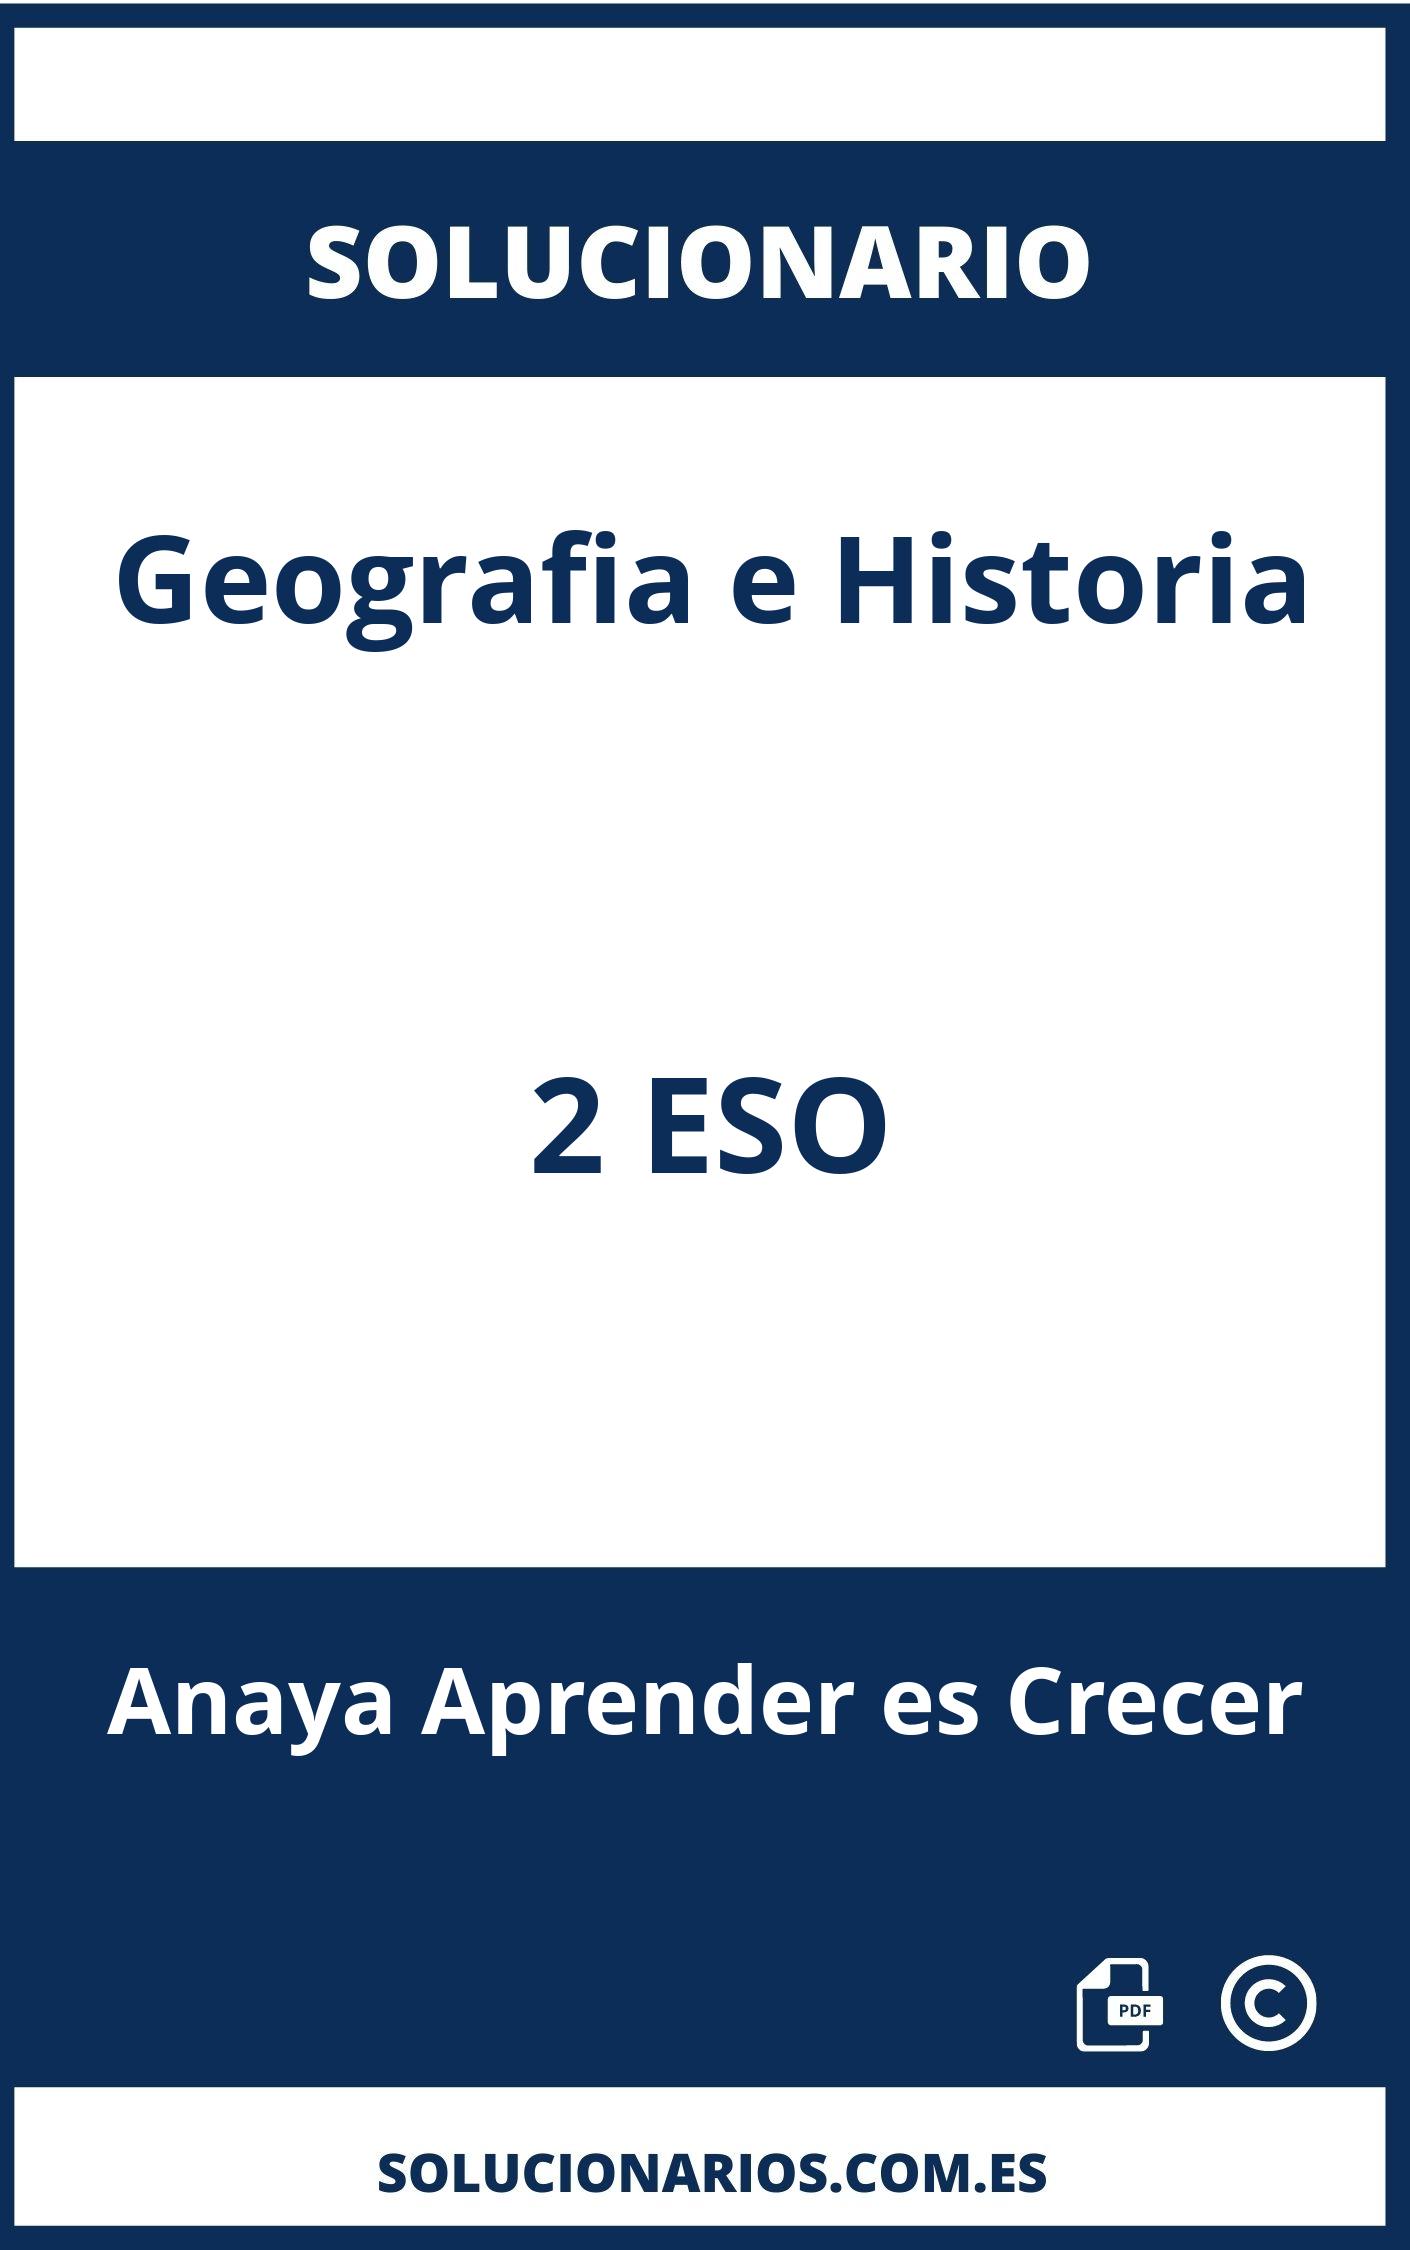 Solucionario Geografia e Historia 2 ESO Anaya Aprender es Crecer